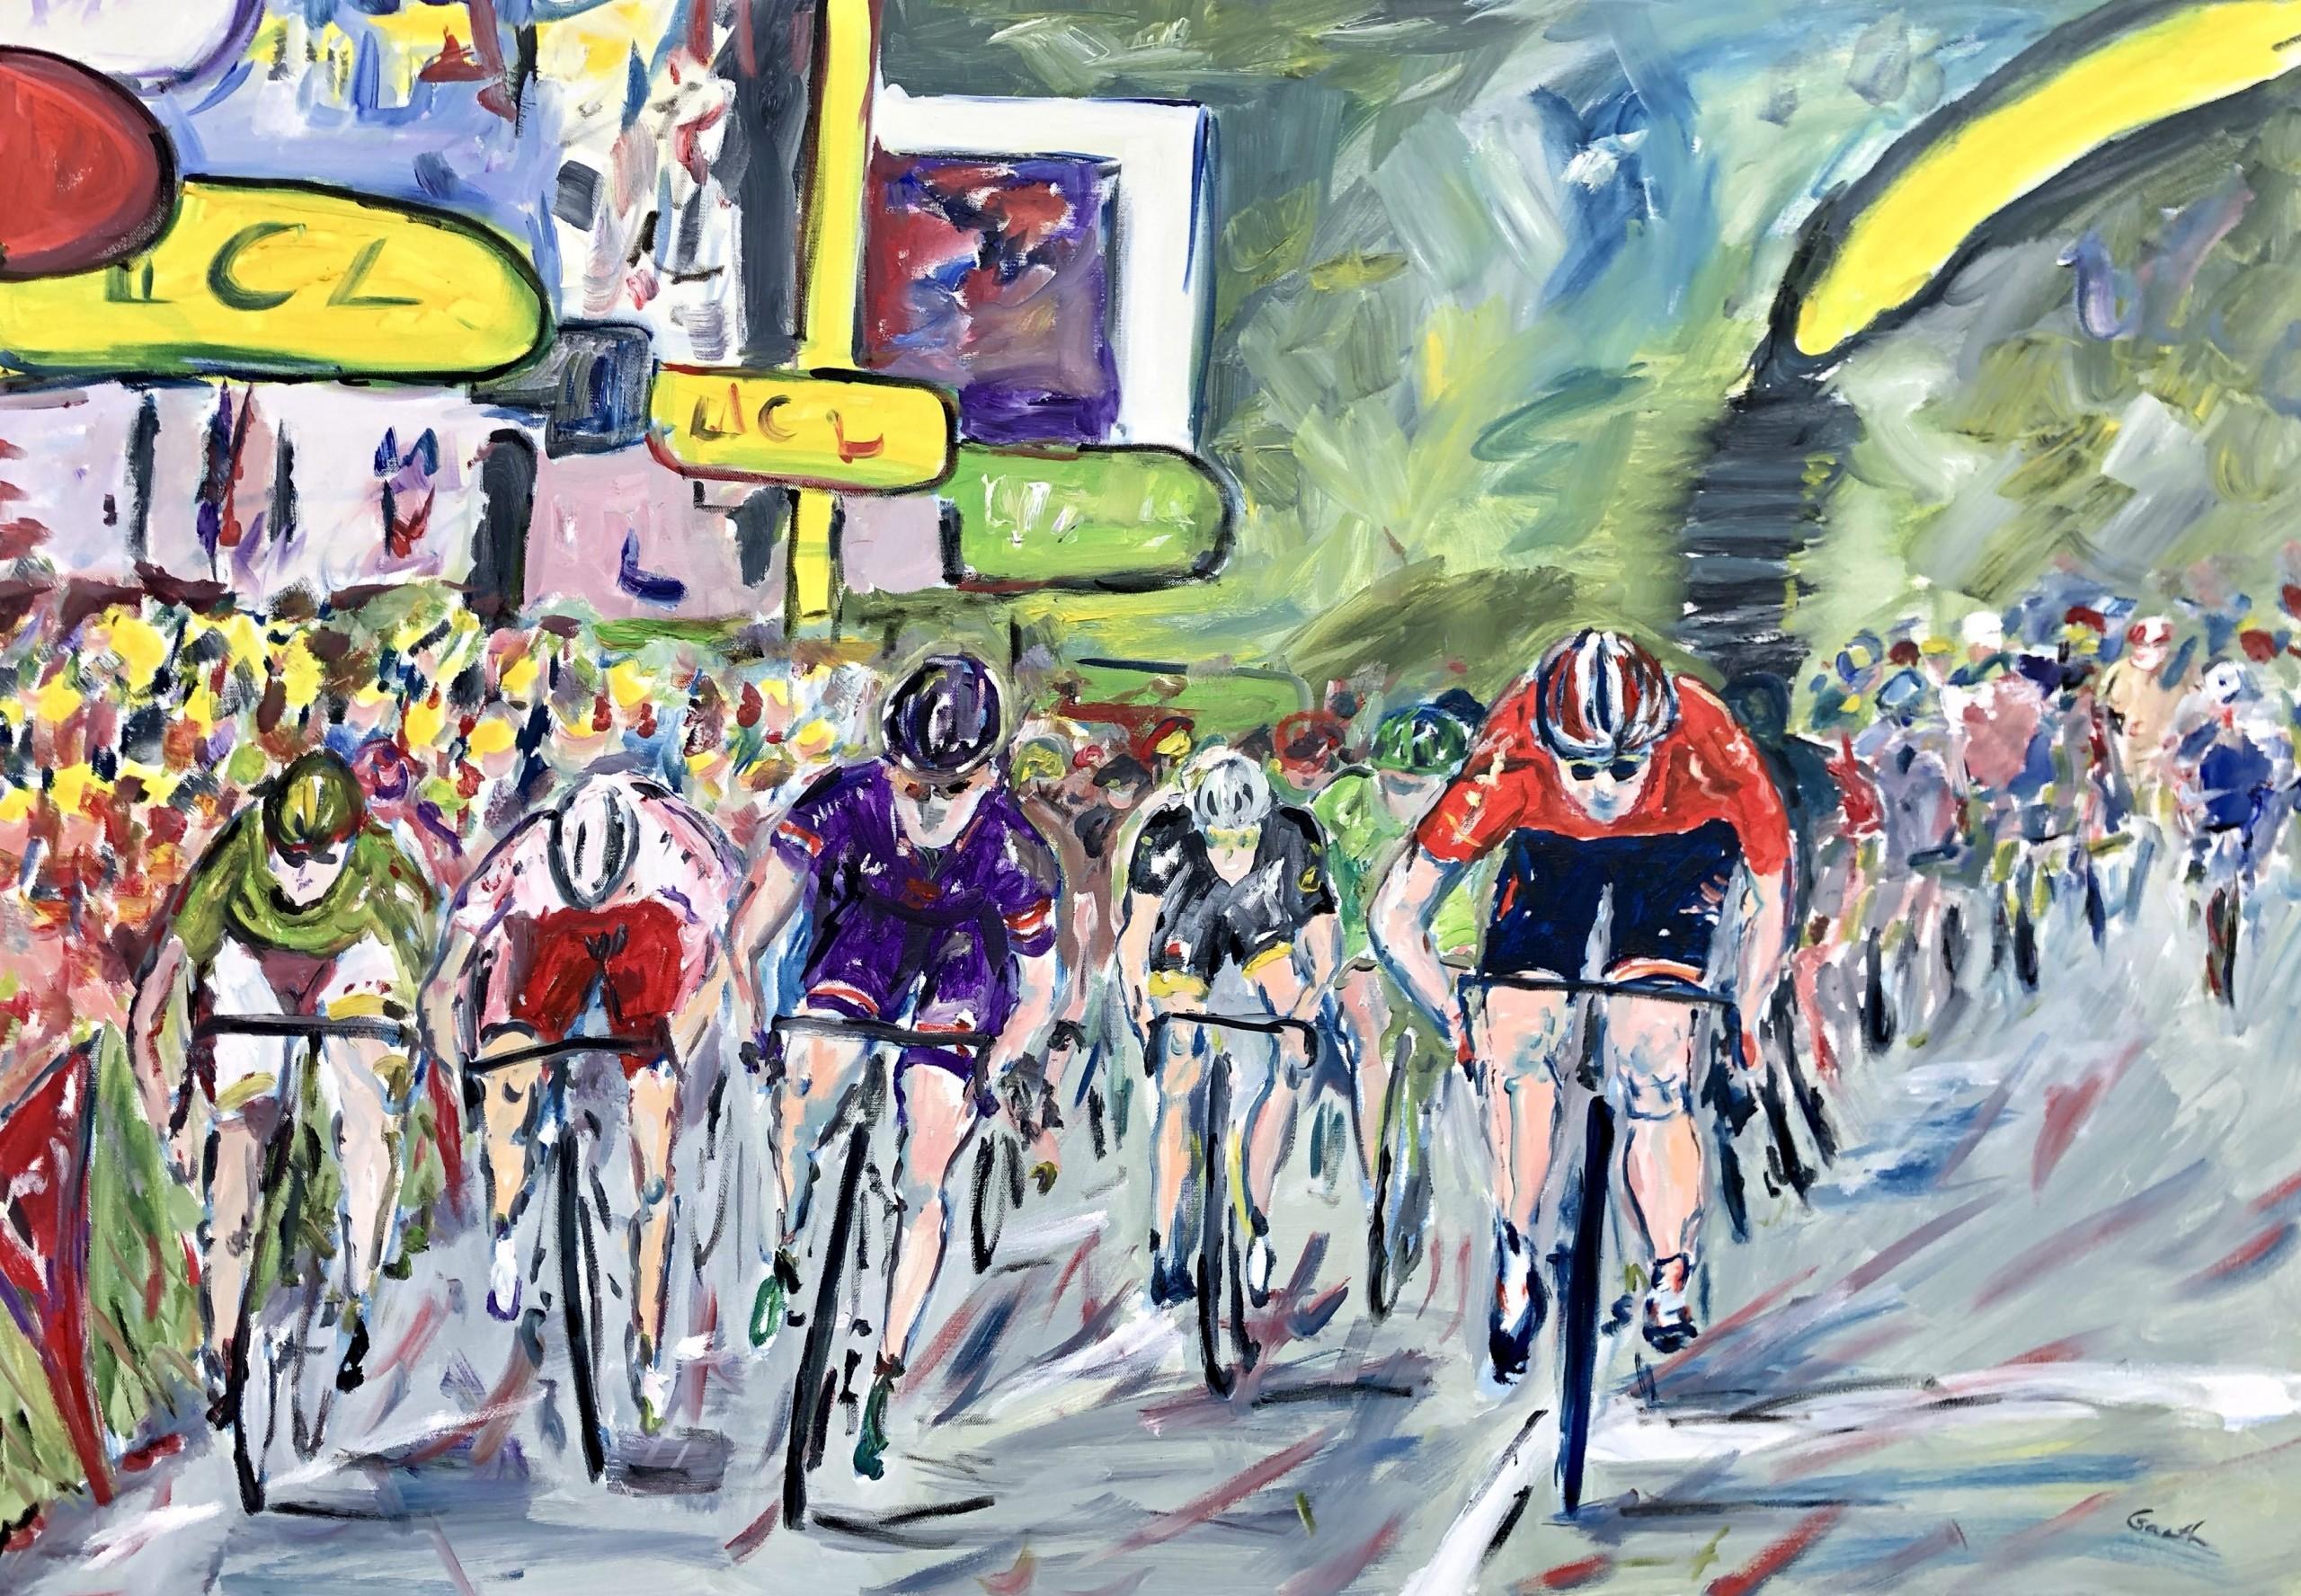 Abstract Painting Gareth Bayley - The Final Sprint - Tour de France, étape 15 2015, art de la bicyclette, art abordable